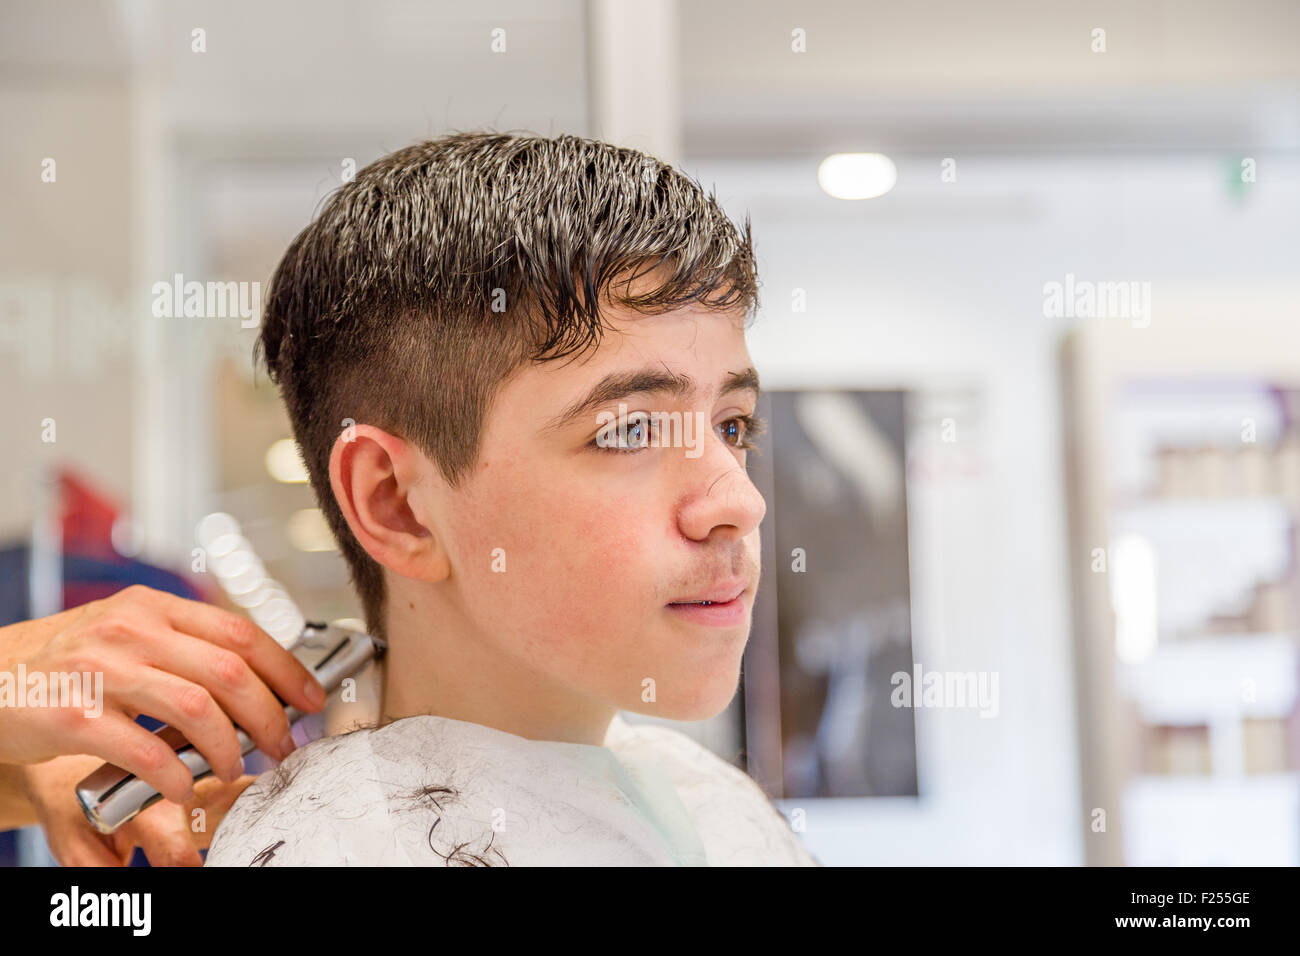 Cute caucasian teenage boy avec corset assis au salon de coiffure pour une coupe Banque D'Images